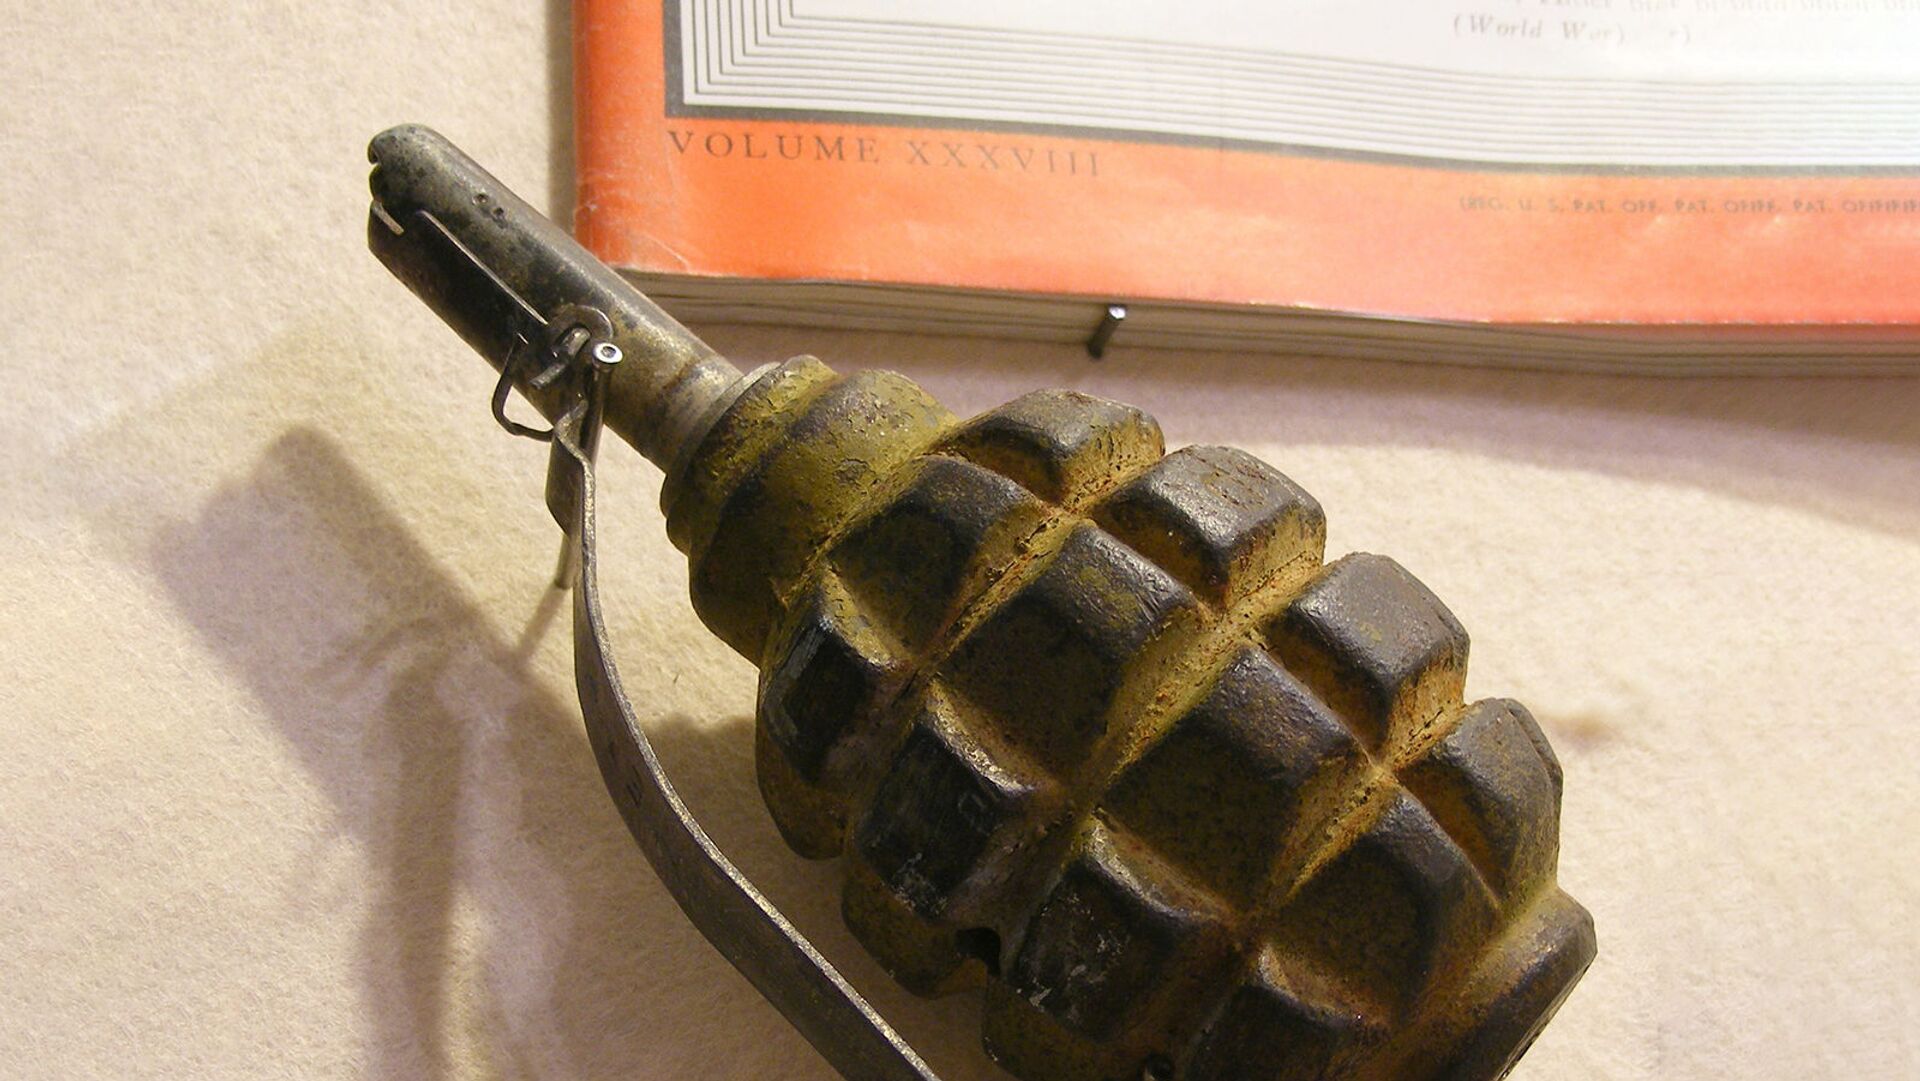 Ручная противопехотная оборонительная граната Ф-1 (лимонка) - Sputnik Արմենիա, 1920, 26.07.2021